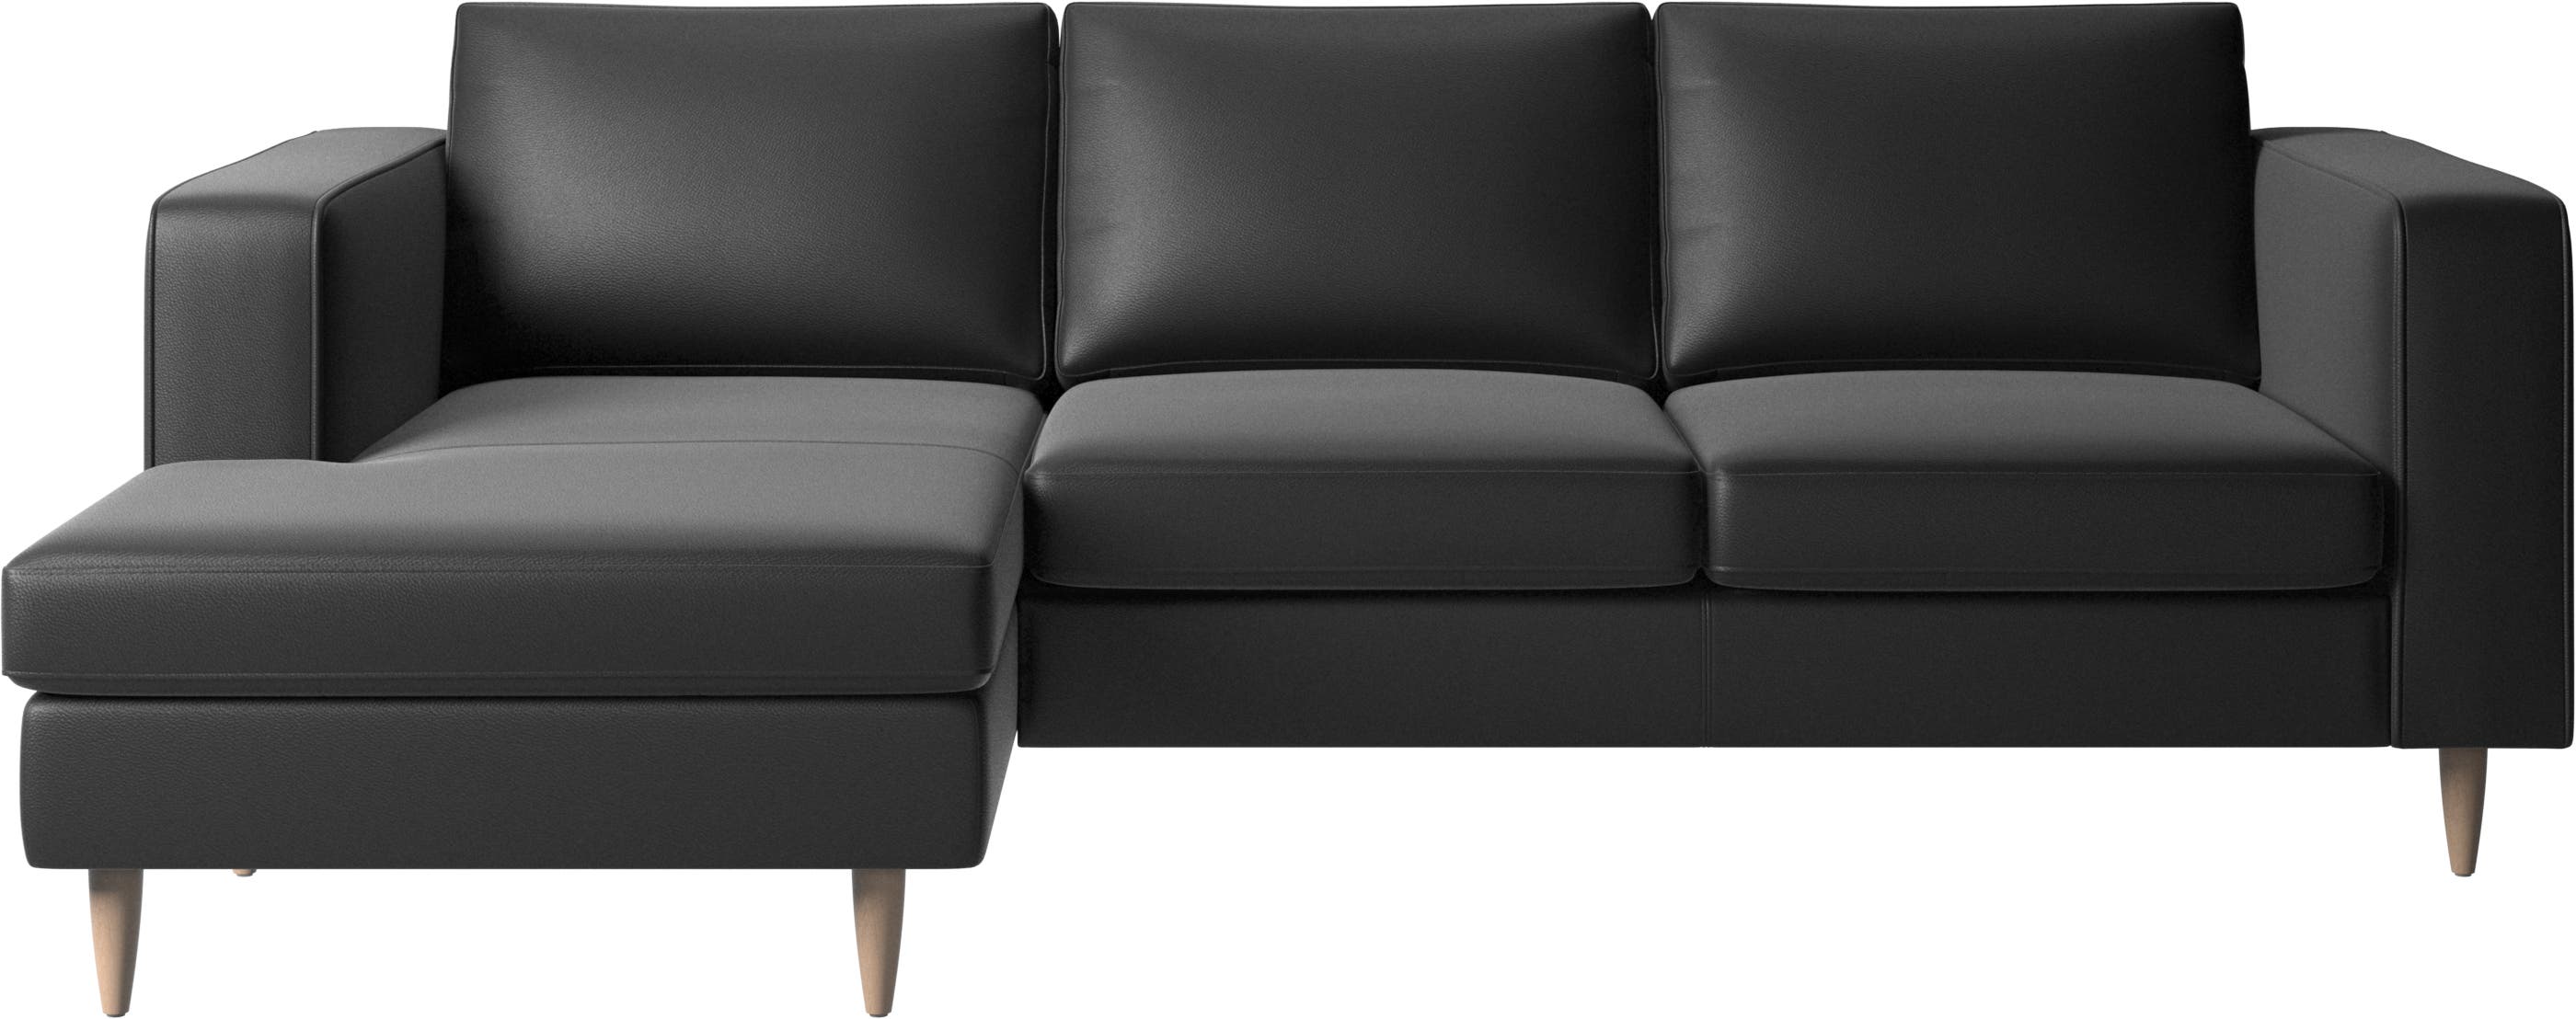 Indivi sofa with resting unit